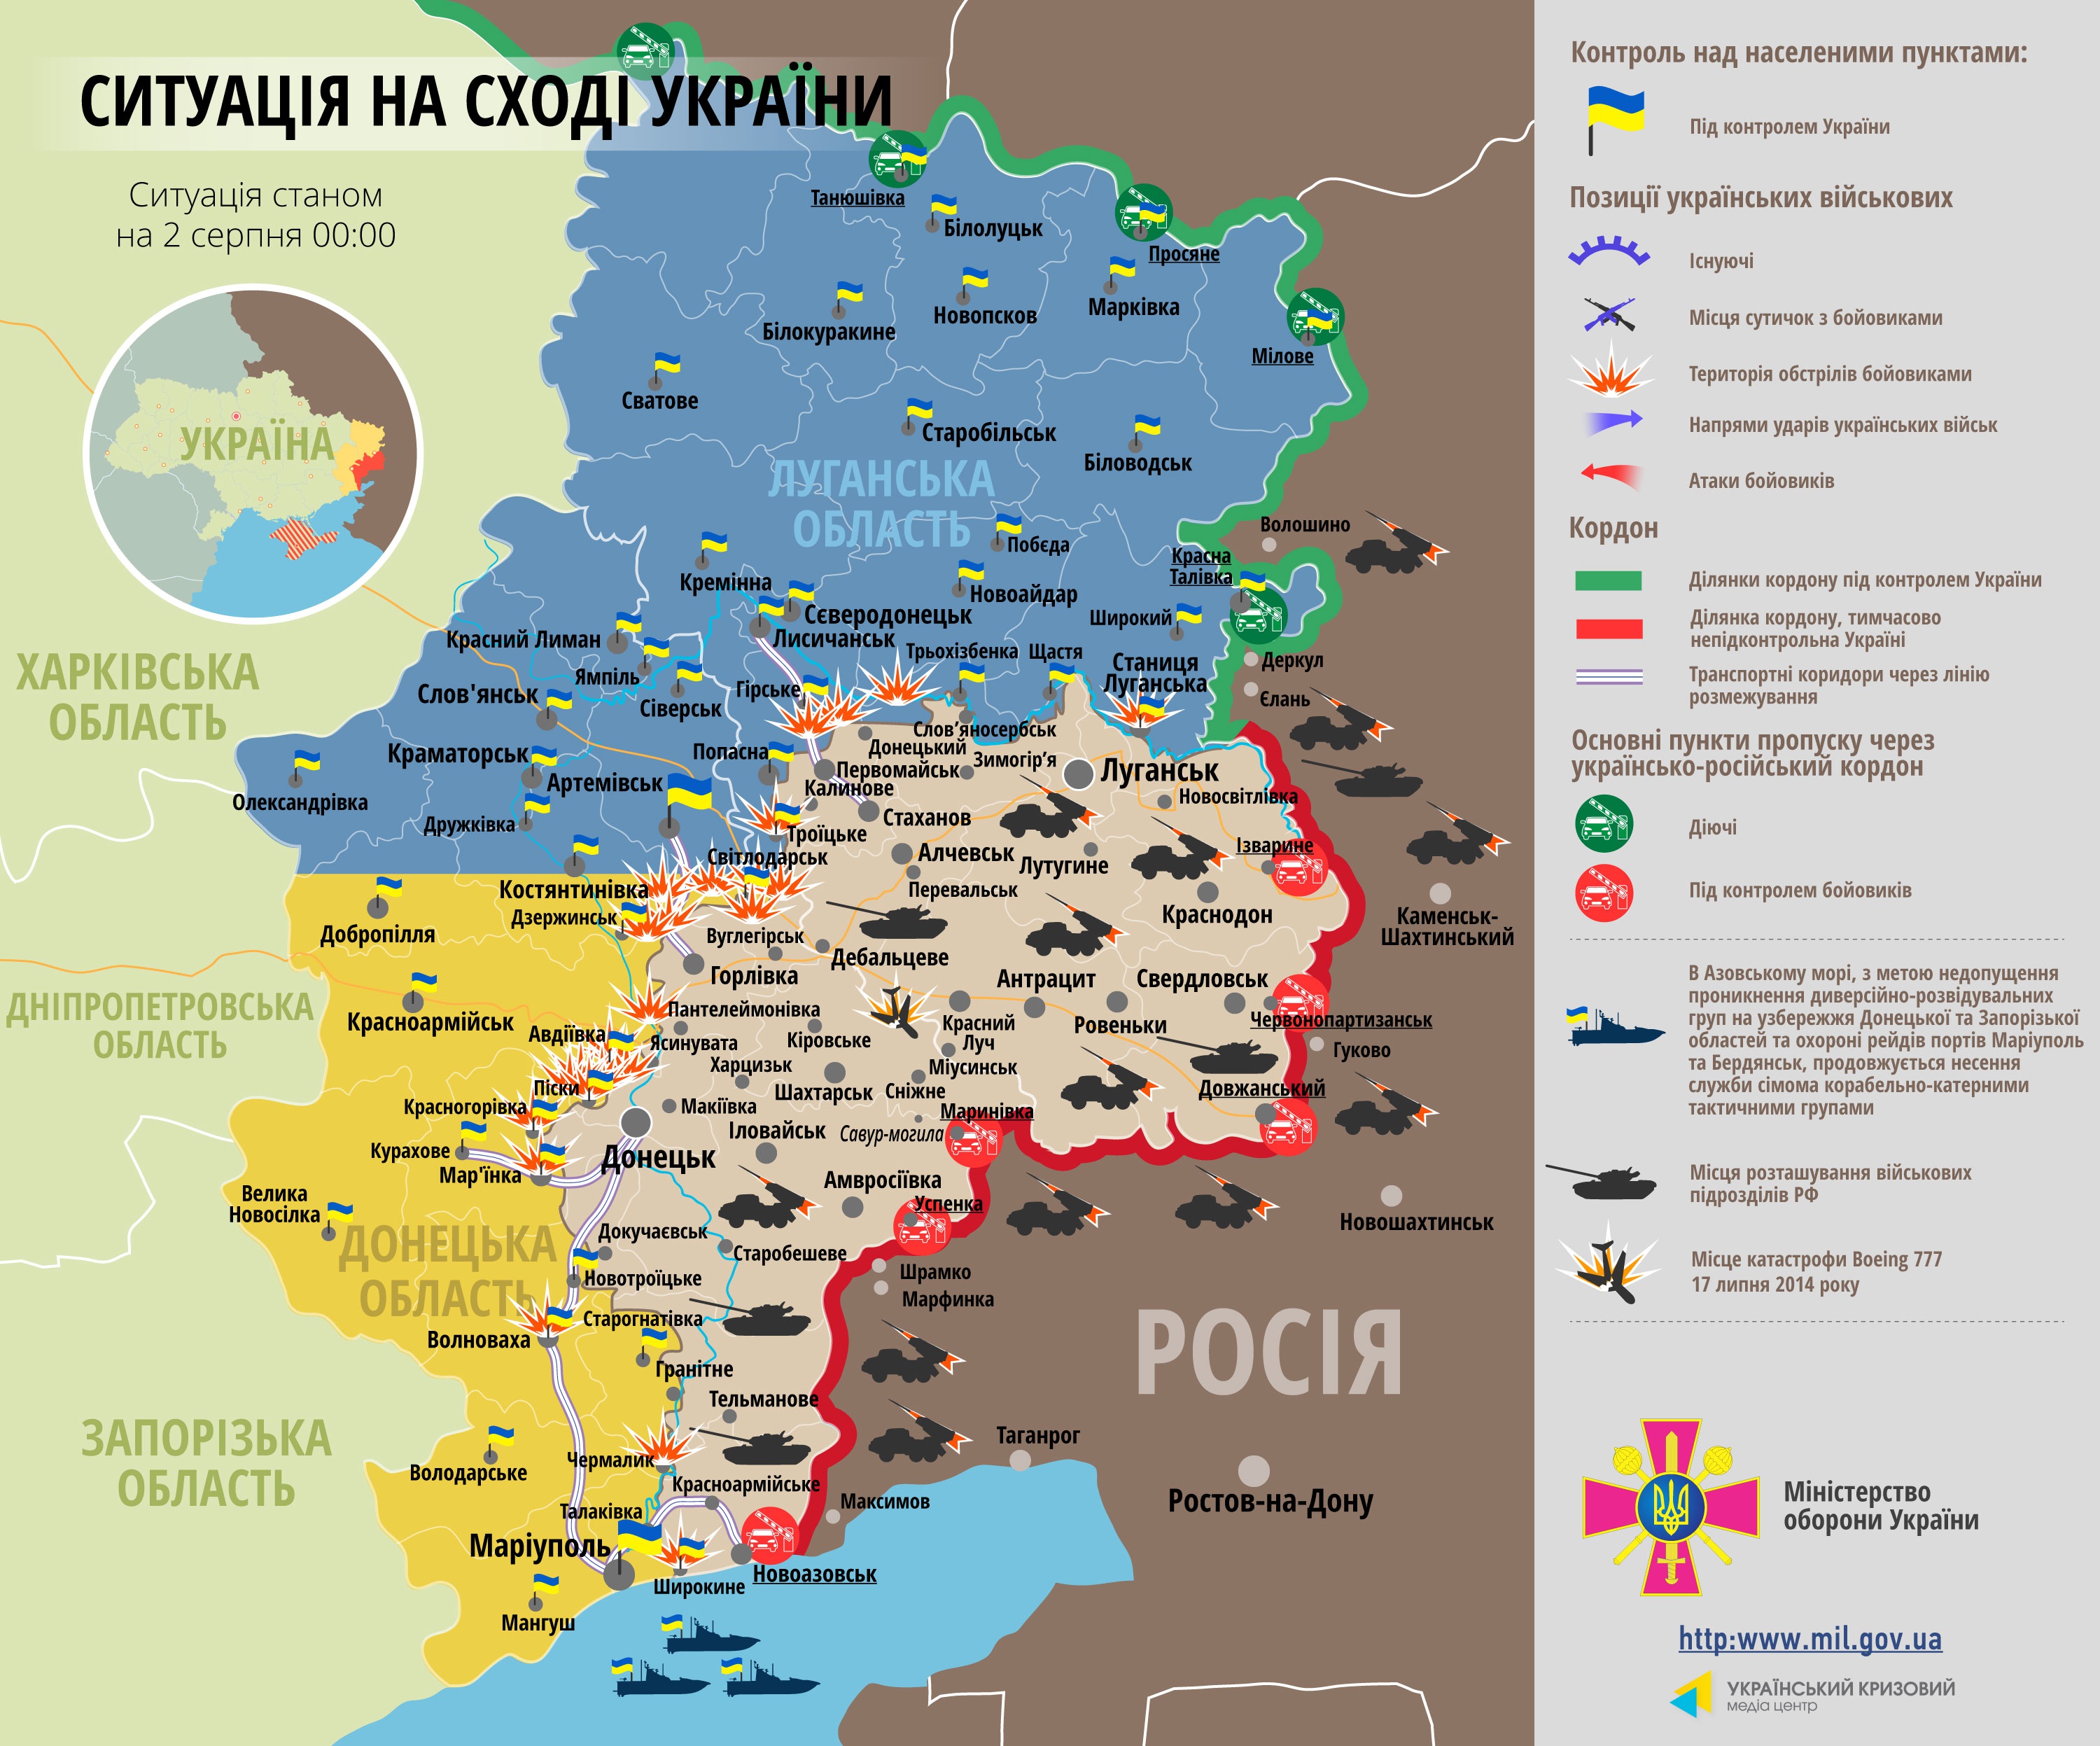 Самые резонансные события дня в Донбассе: парашютисты над Донецком и круглосуточные бои под Горловкой (фото,видео)